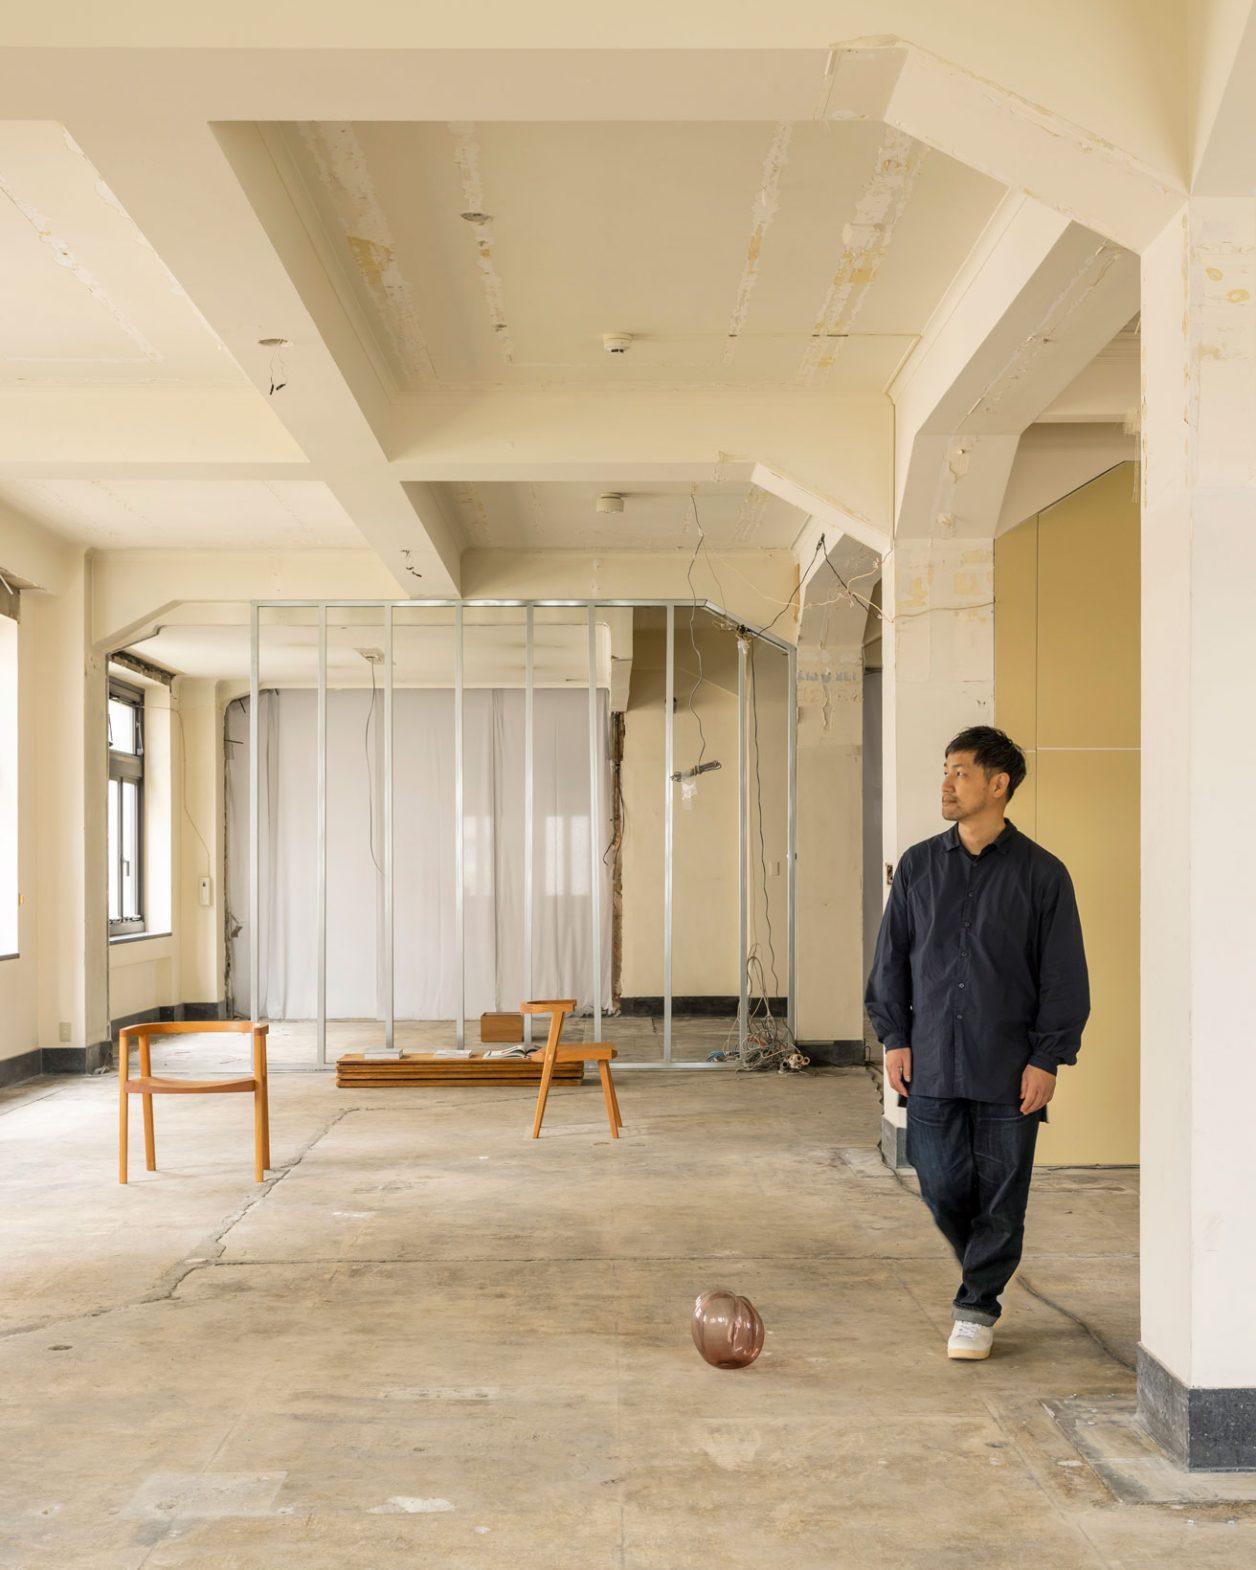 【インタビュー】デザイナー・柳原照弘の思考を可視化した神戸の新拠点〈VAGUE KOBE〉一部公開中。